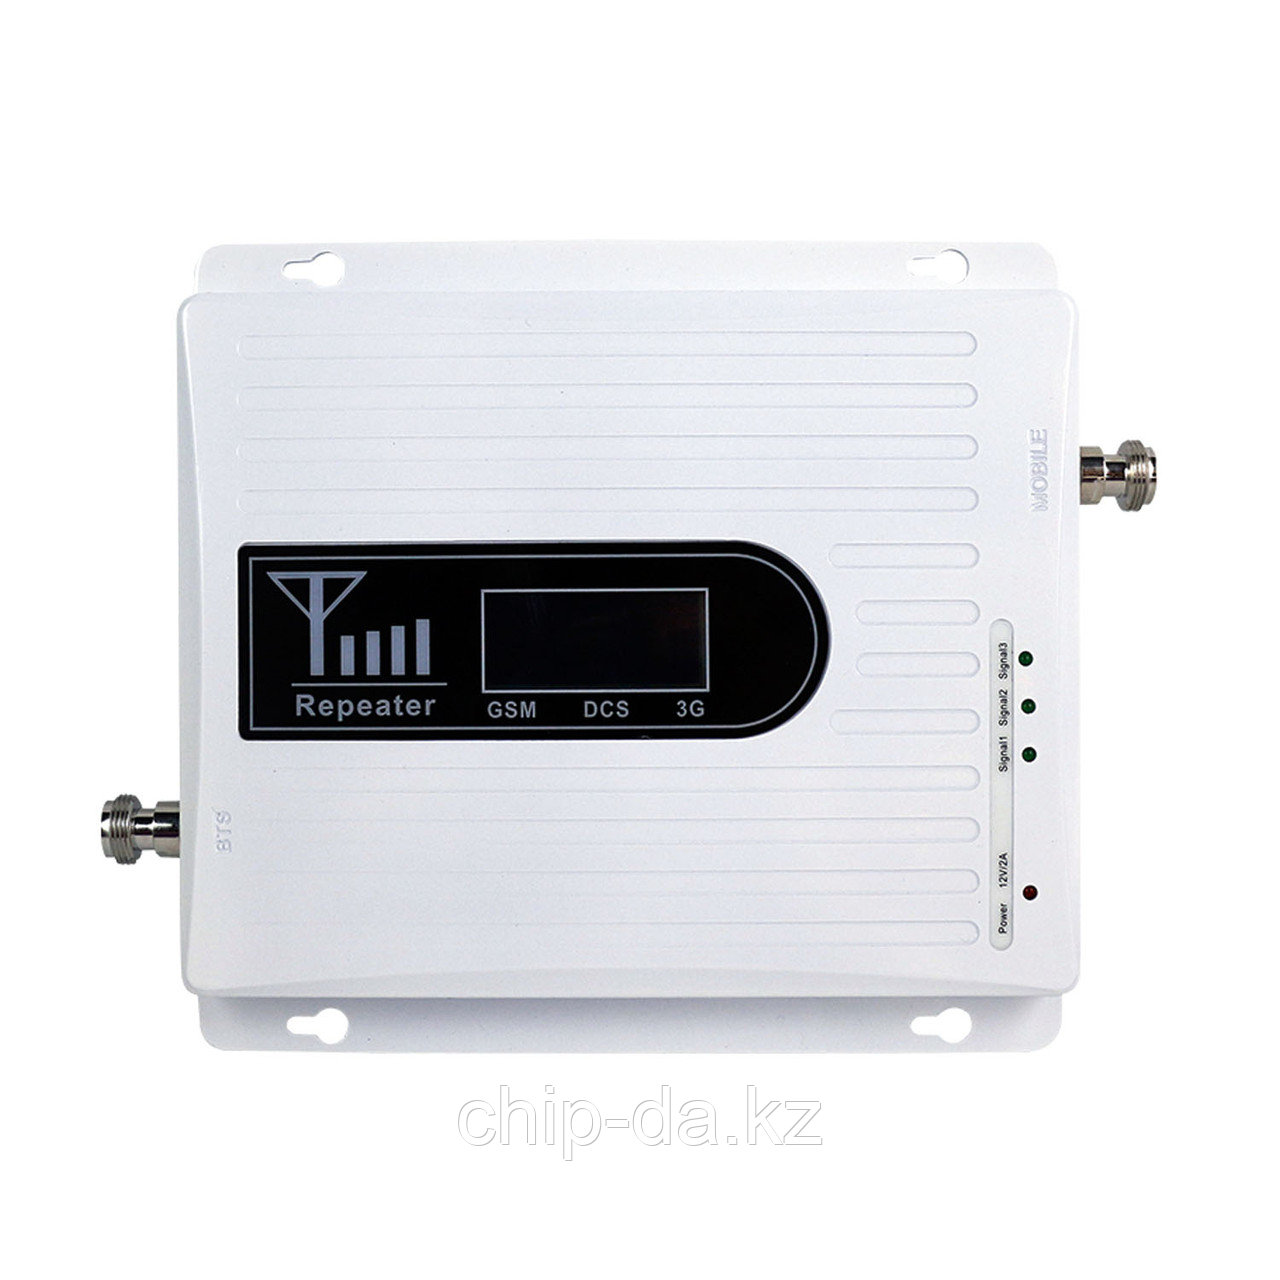 Усилитель сигнала 2G/3G/4G EP-AB016